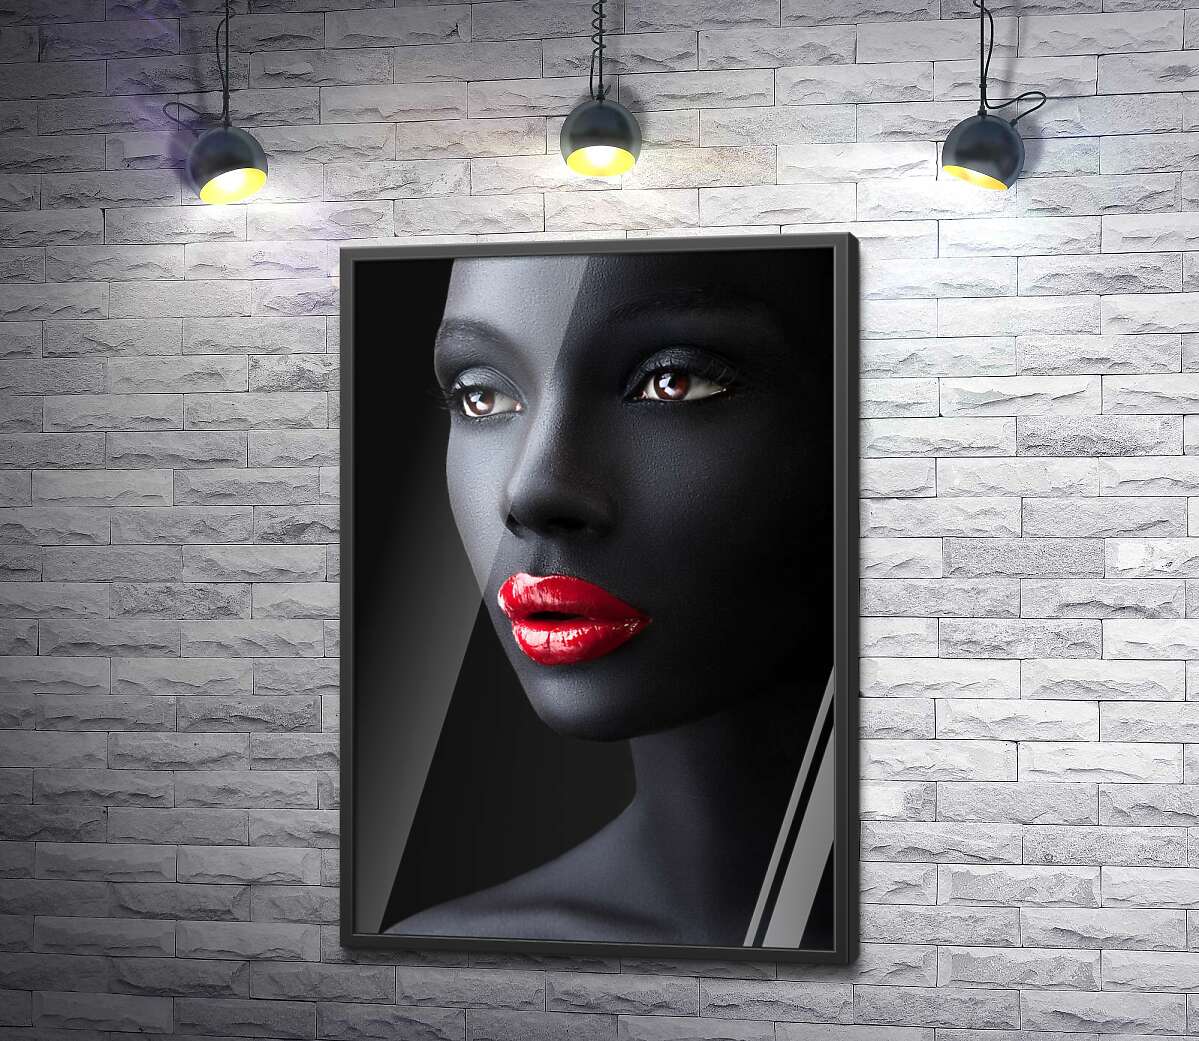 постер Глянцевый блеск красных губ на угольно-черной коже девушки